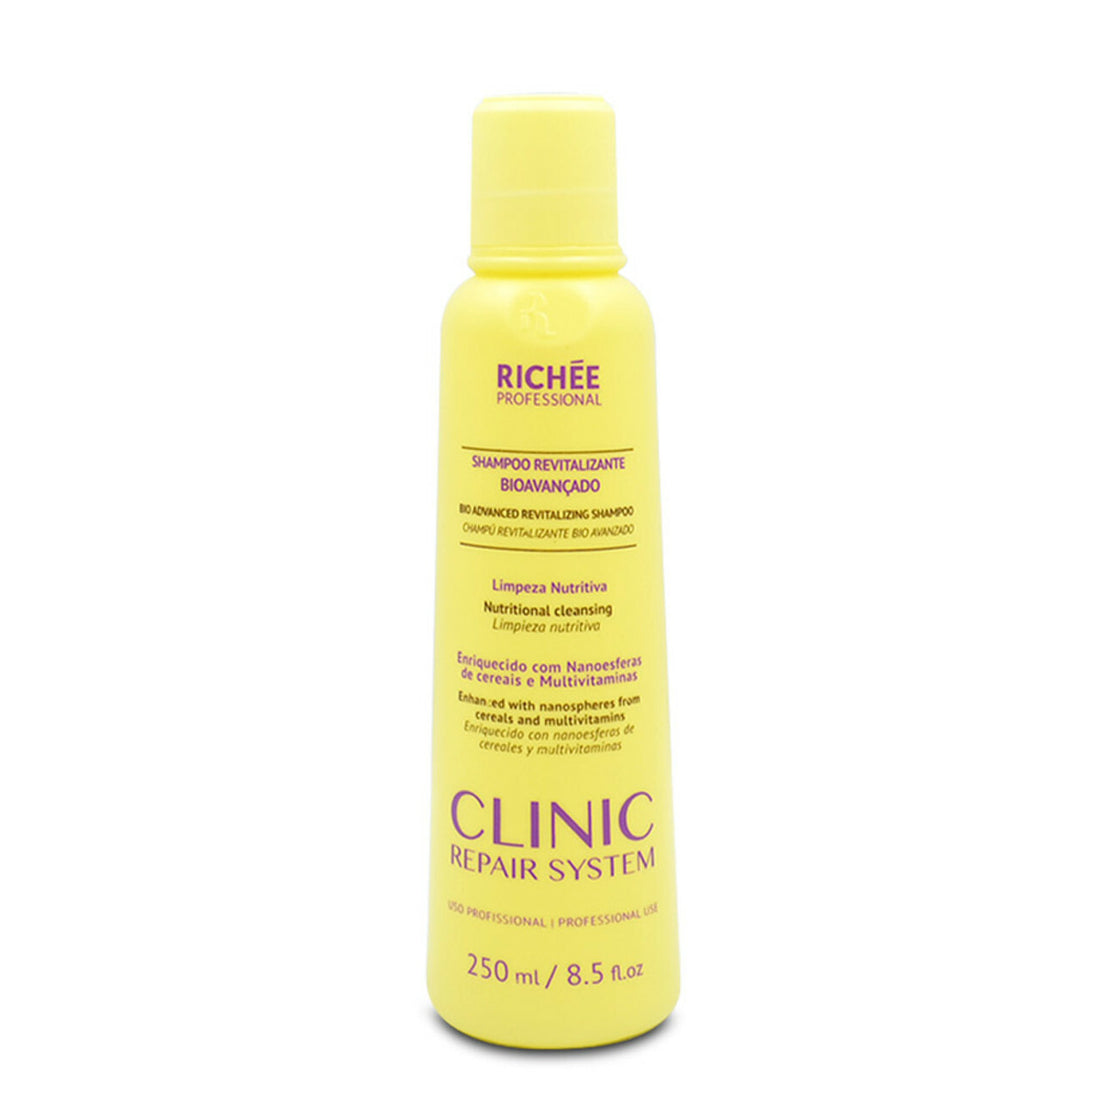 Richee, Clinic Repair System Revitalizante Bioavançado, Shampoing nettoyant en profondeur pour cheveux 250 ml